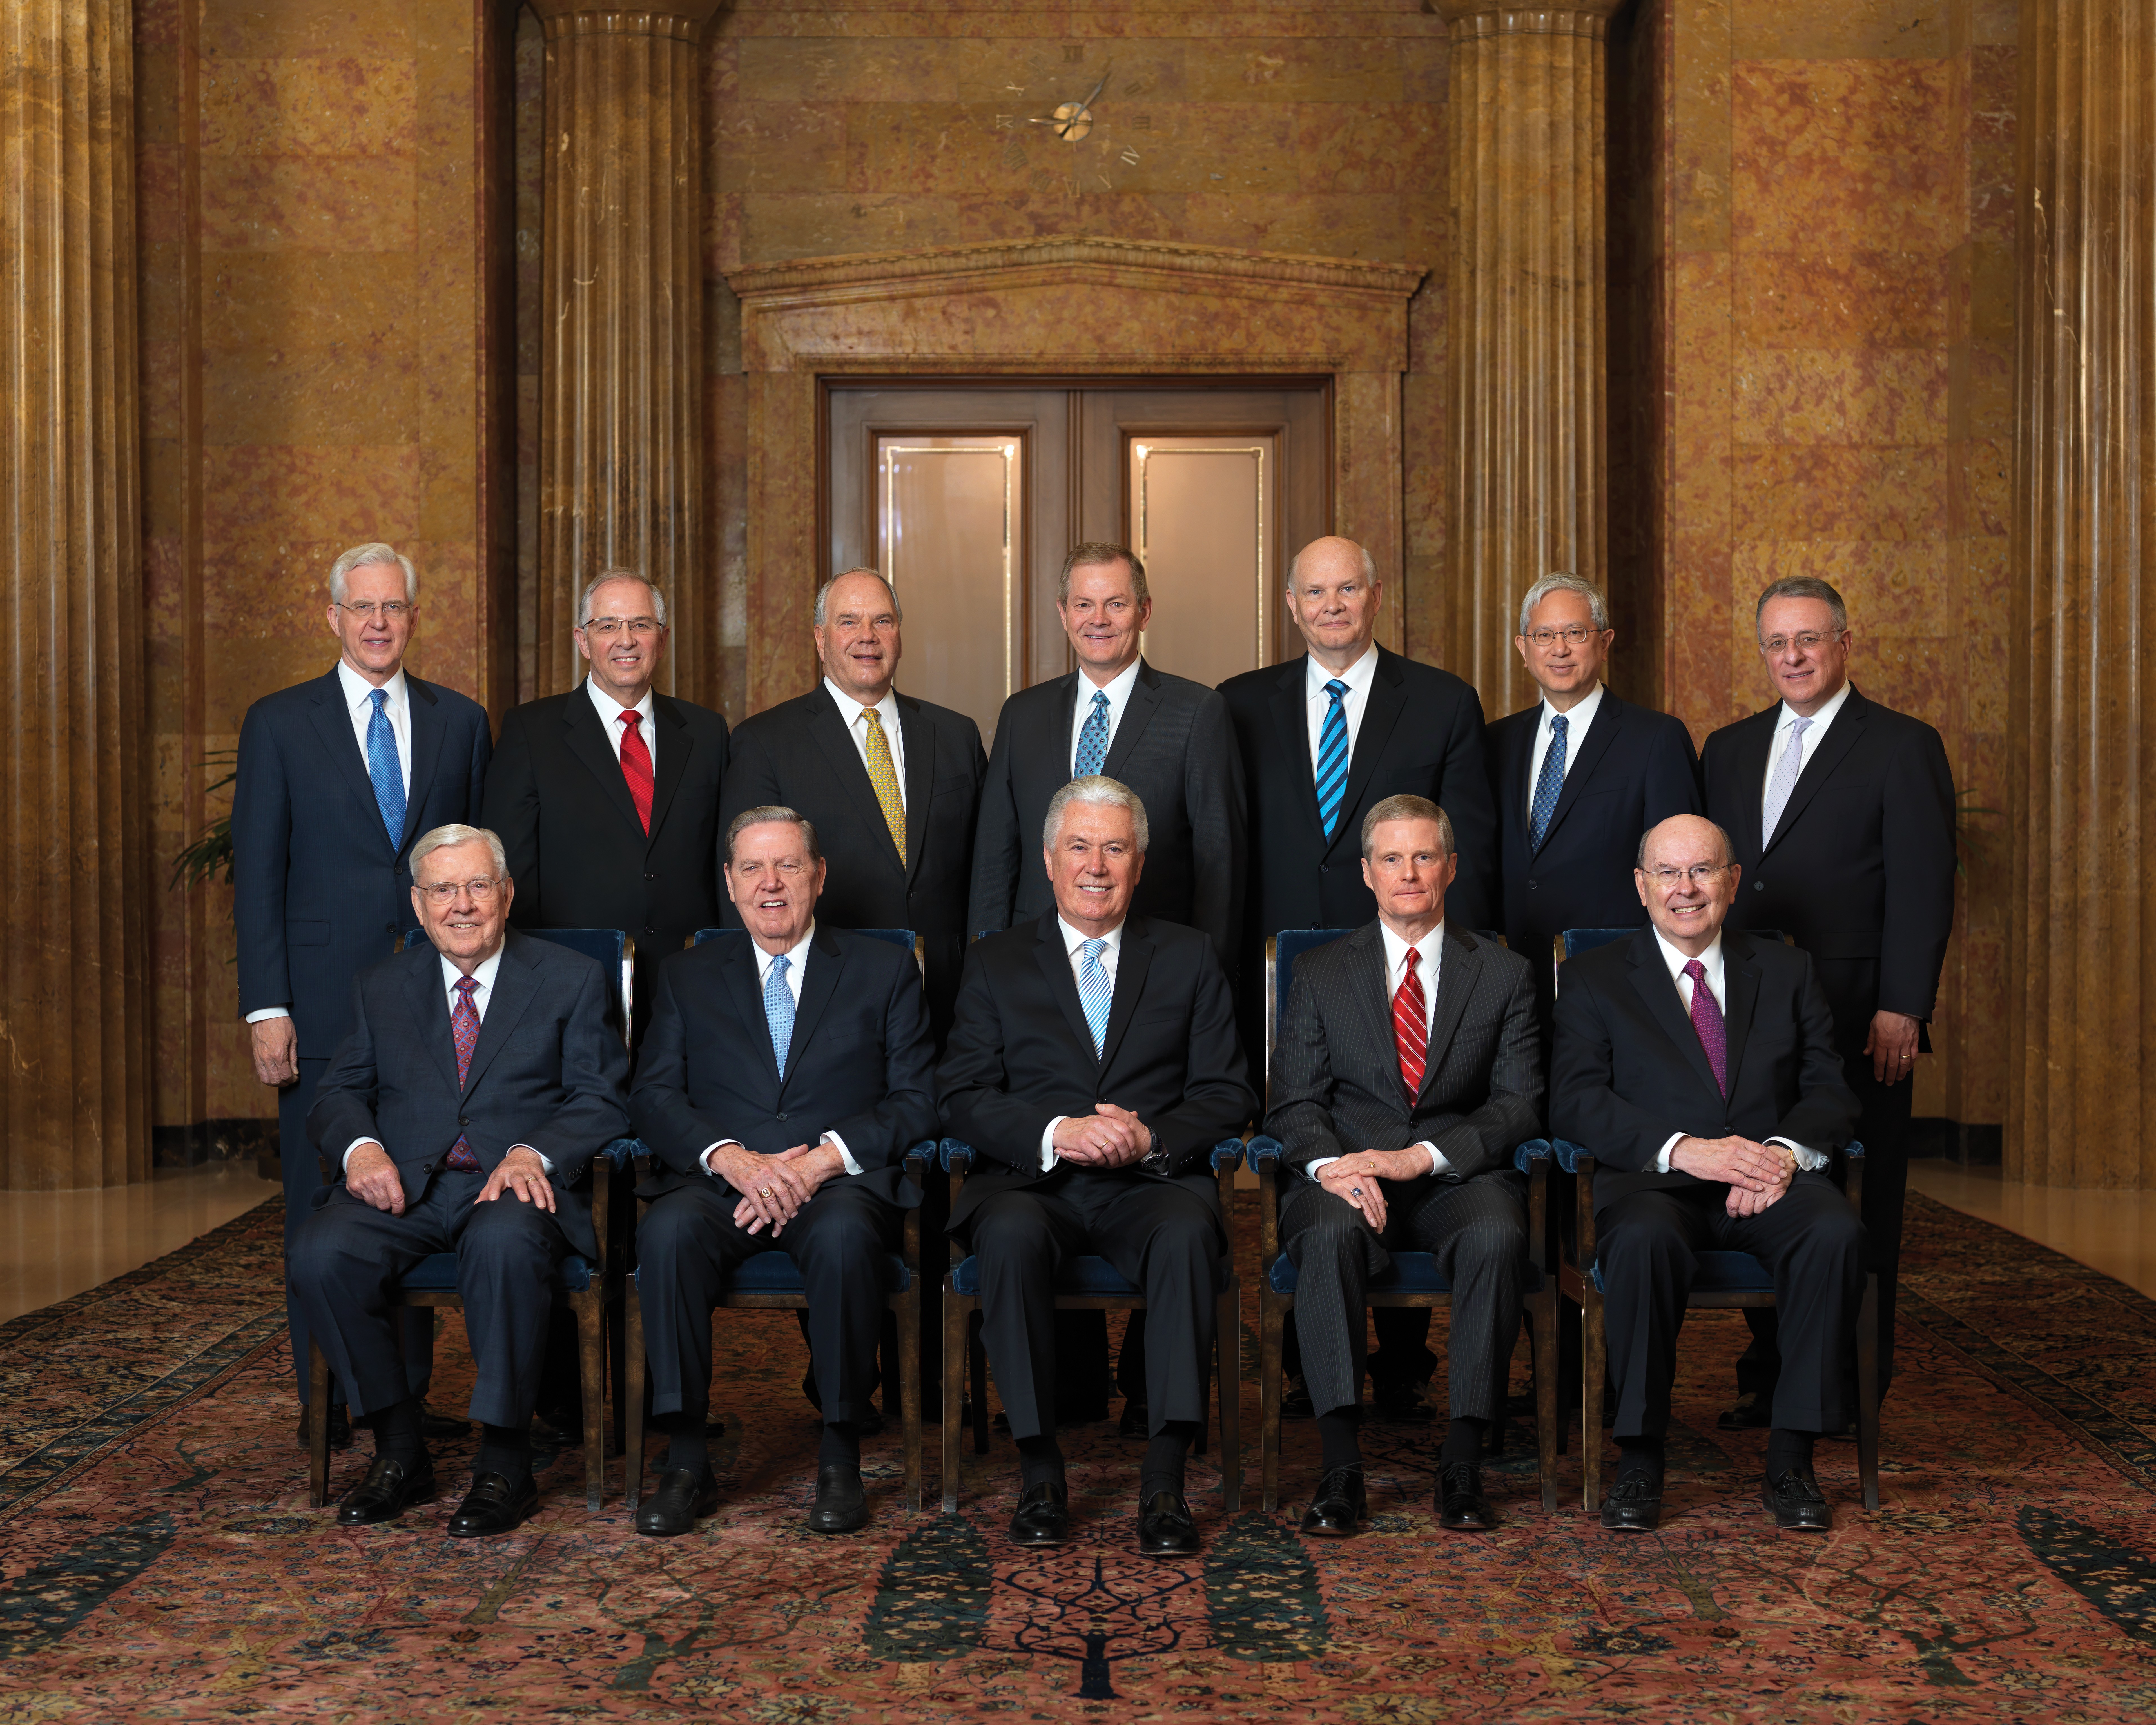 Retrato oficial en grupo del Cuórum de los Doce Apóstoles.